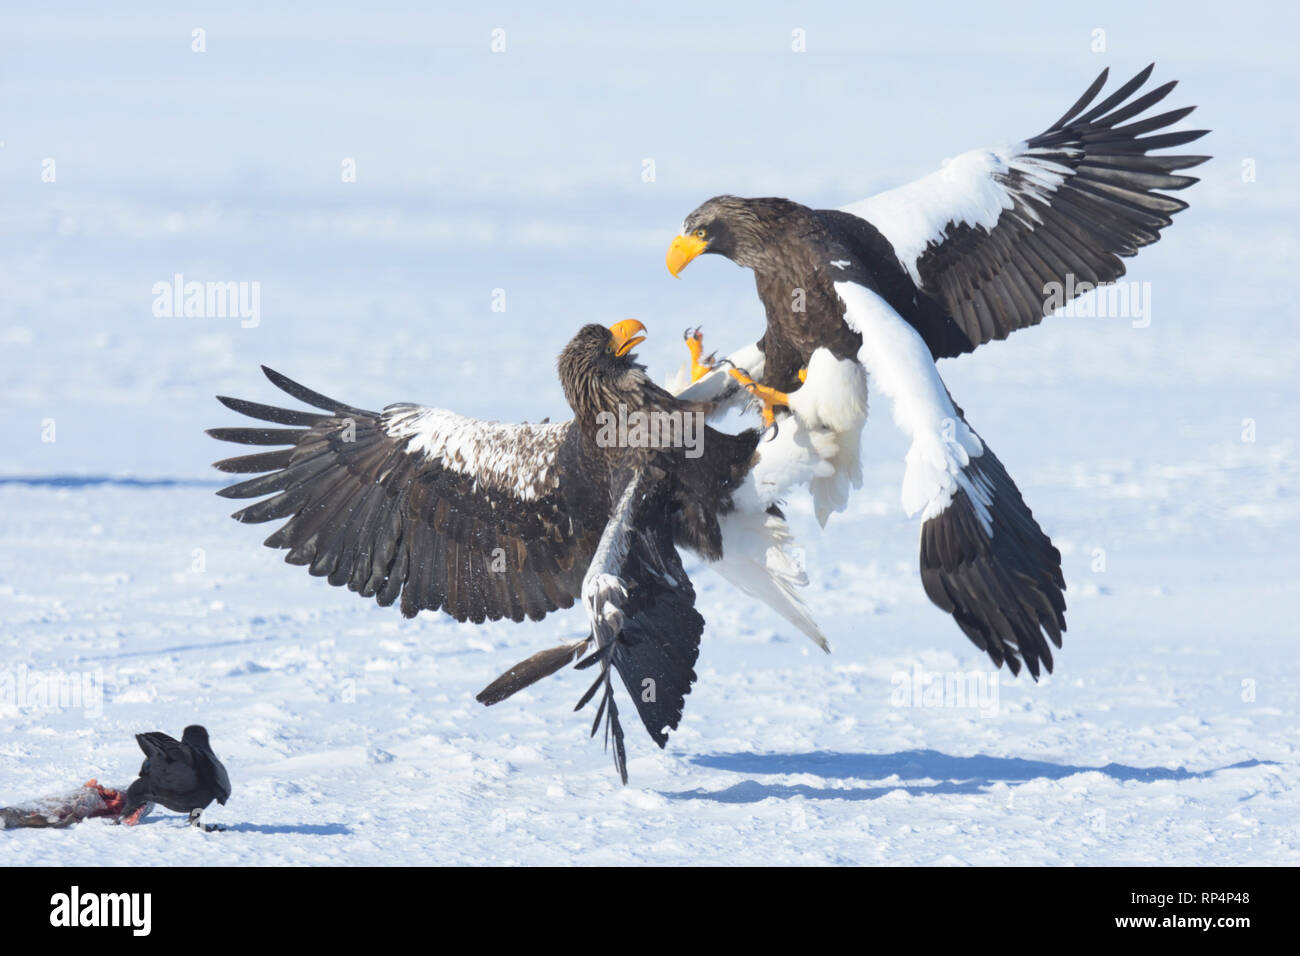 Deux de mer de Steller blanche (Haliaeetus pelagicus) combats tandis qu'un corbeau vole leur poisson. Banque D'Images